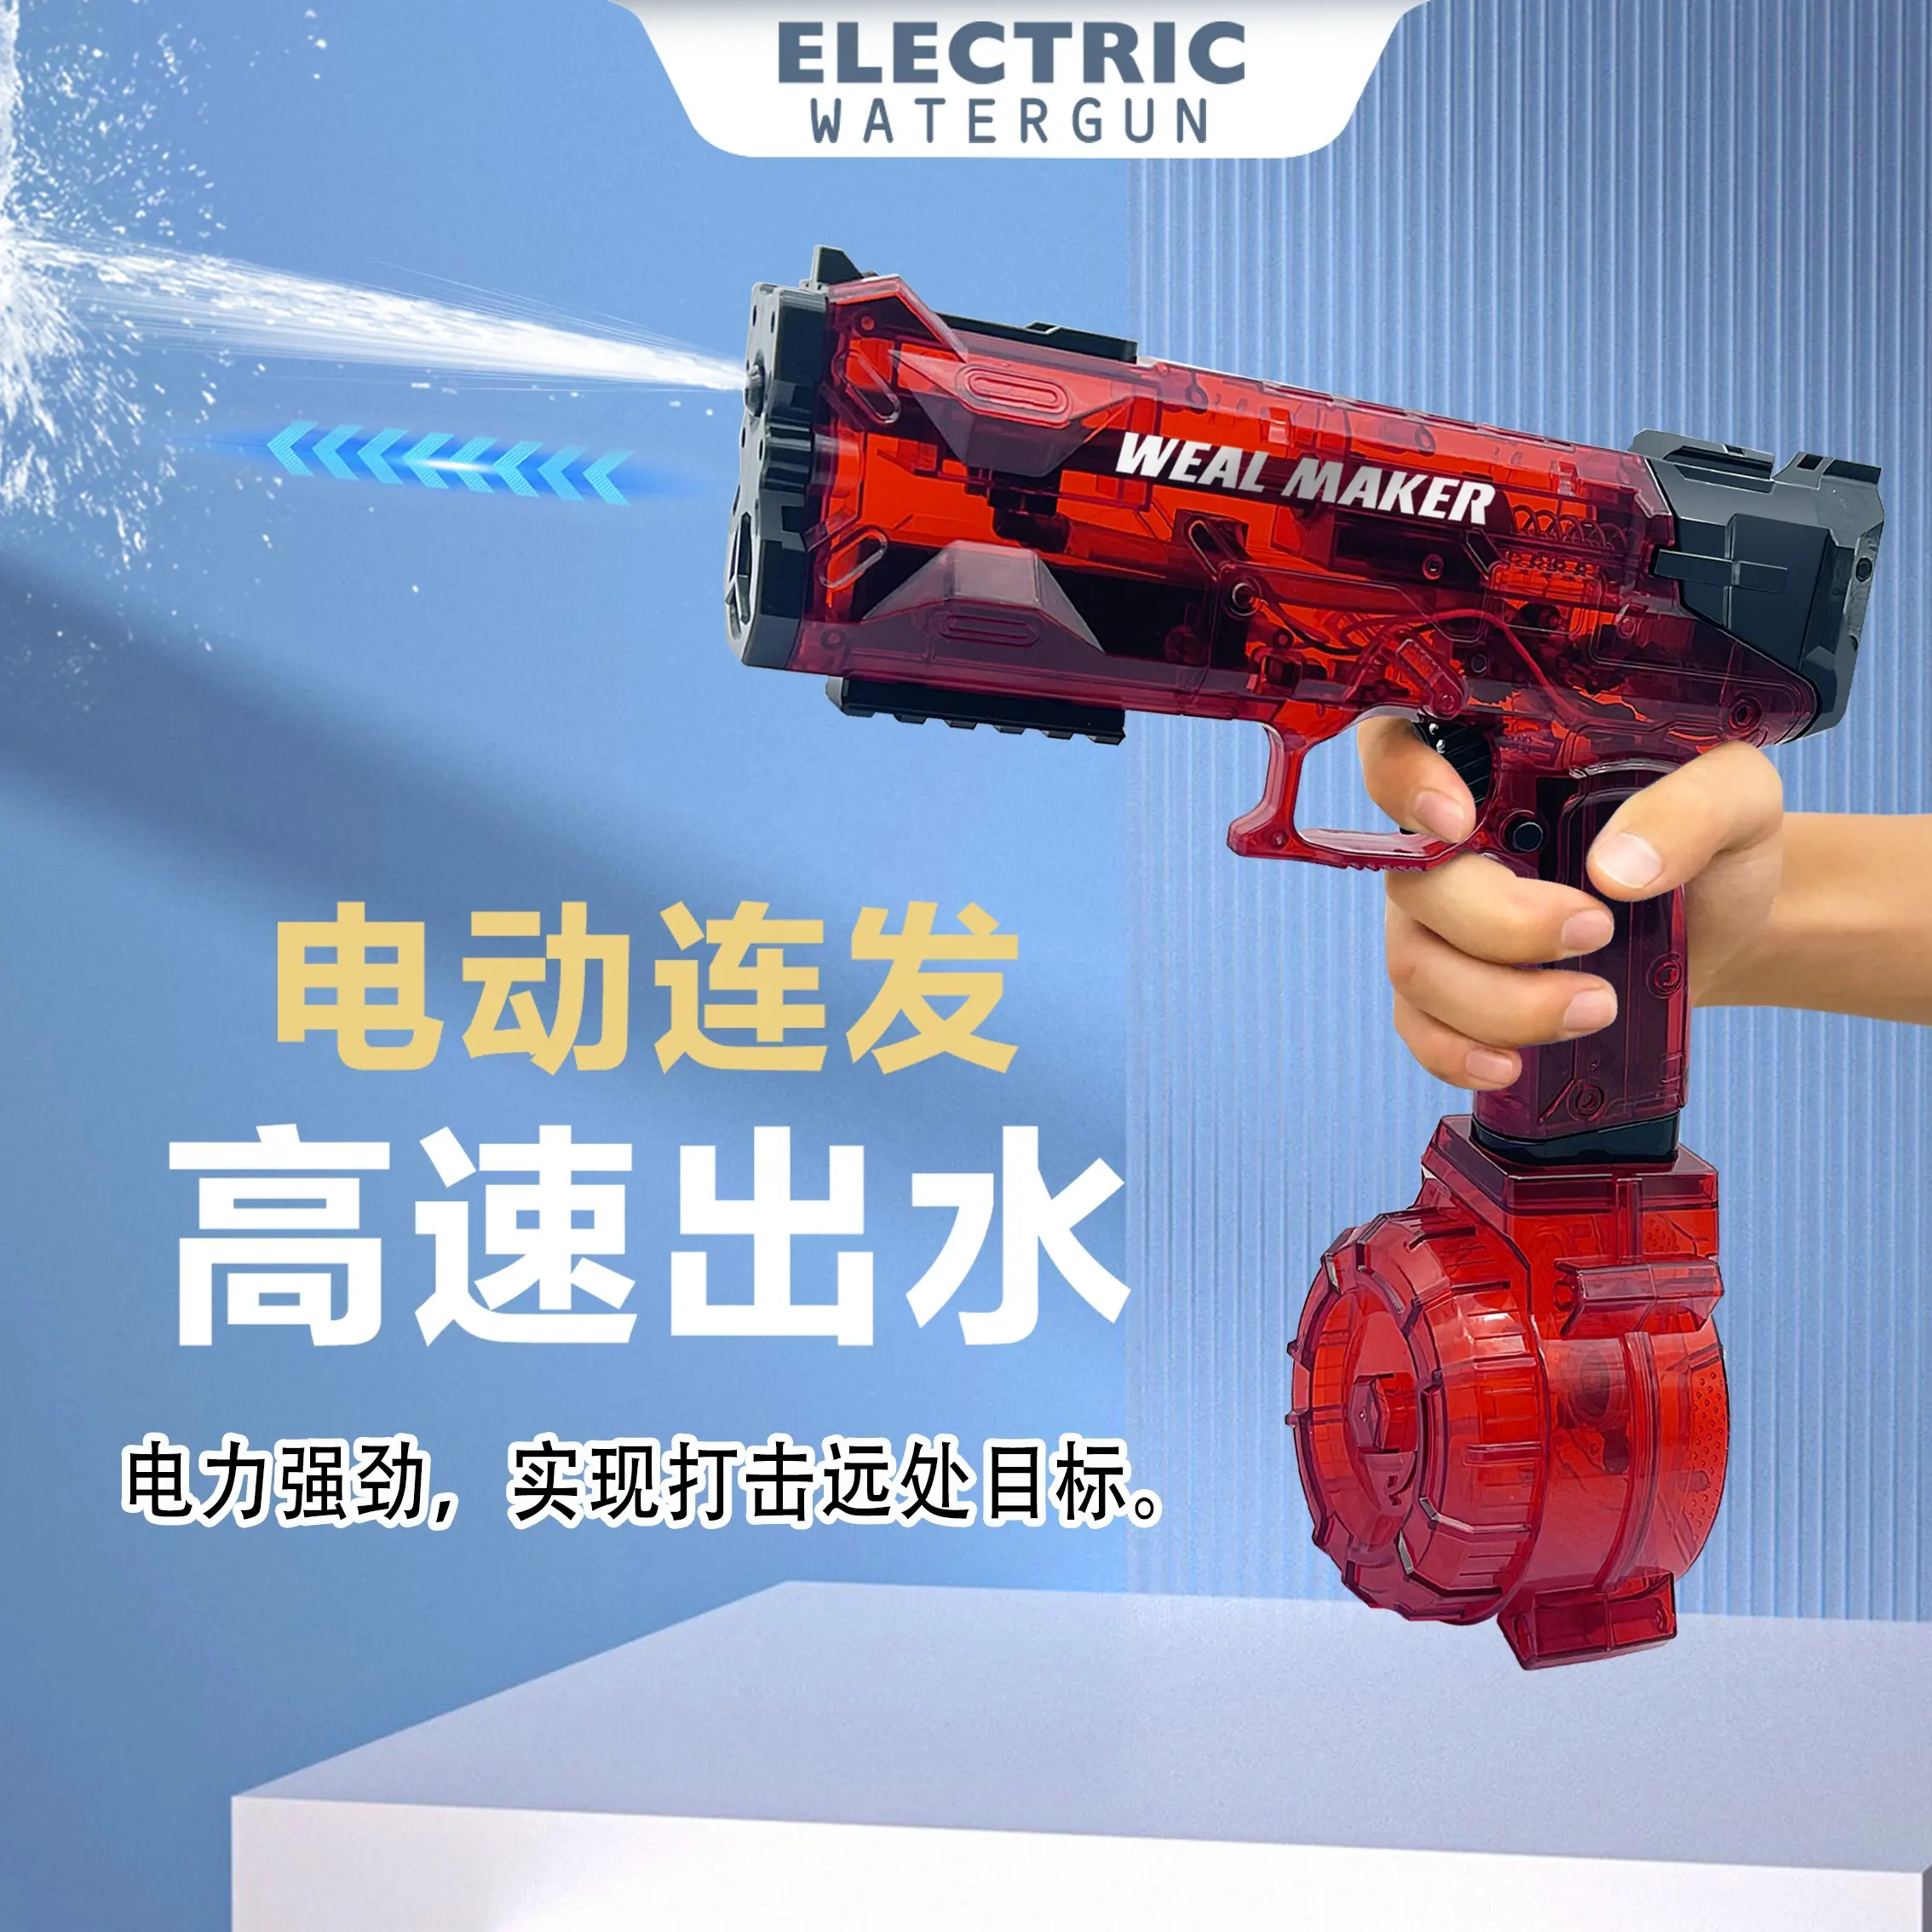 Elektrische Hochleistungs-Wasser pistole mit Wassersp eicher tank mit großer Kapazität Kontinuierliches Schießen Wasser pistole Elektrische Batterie